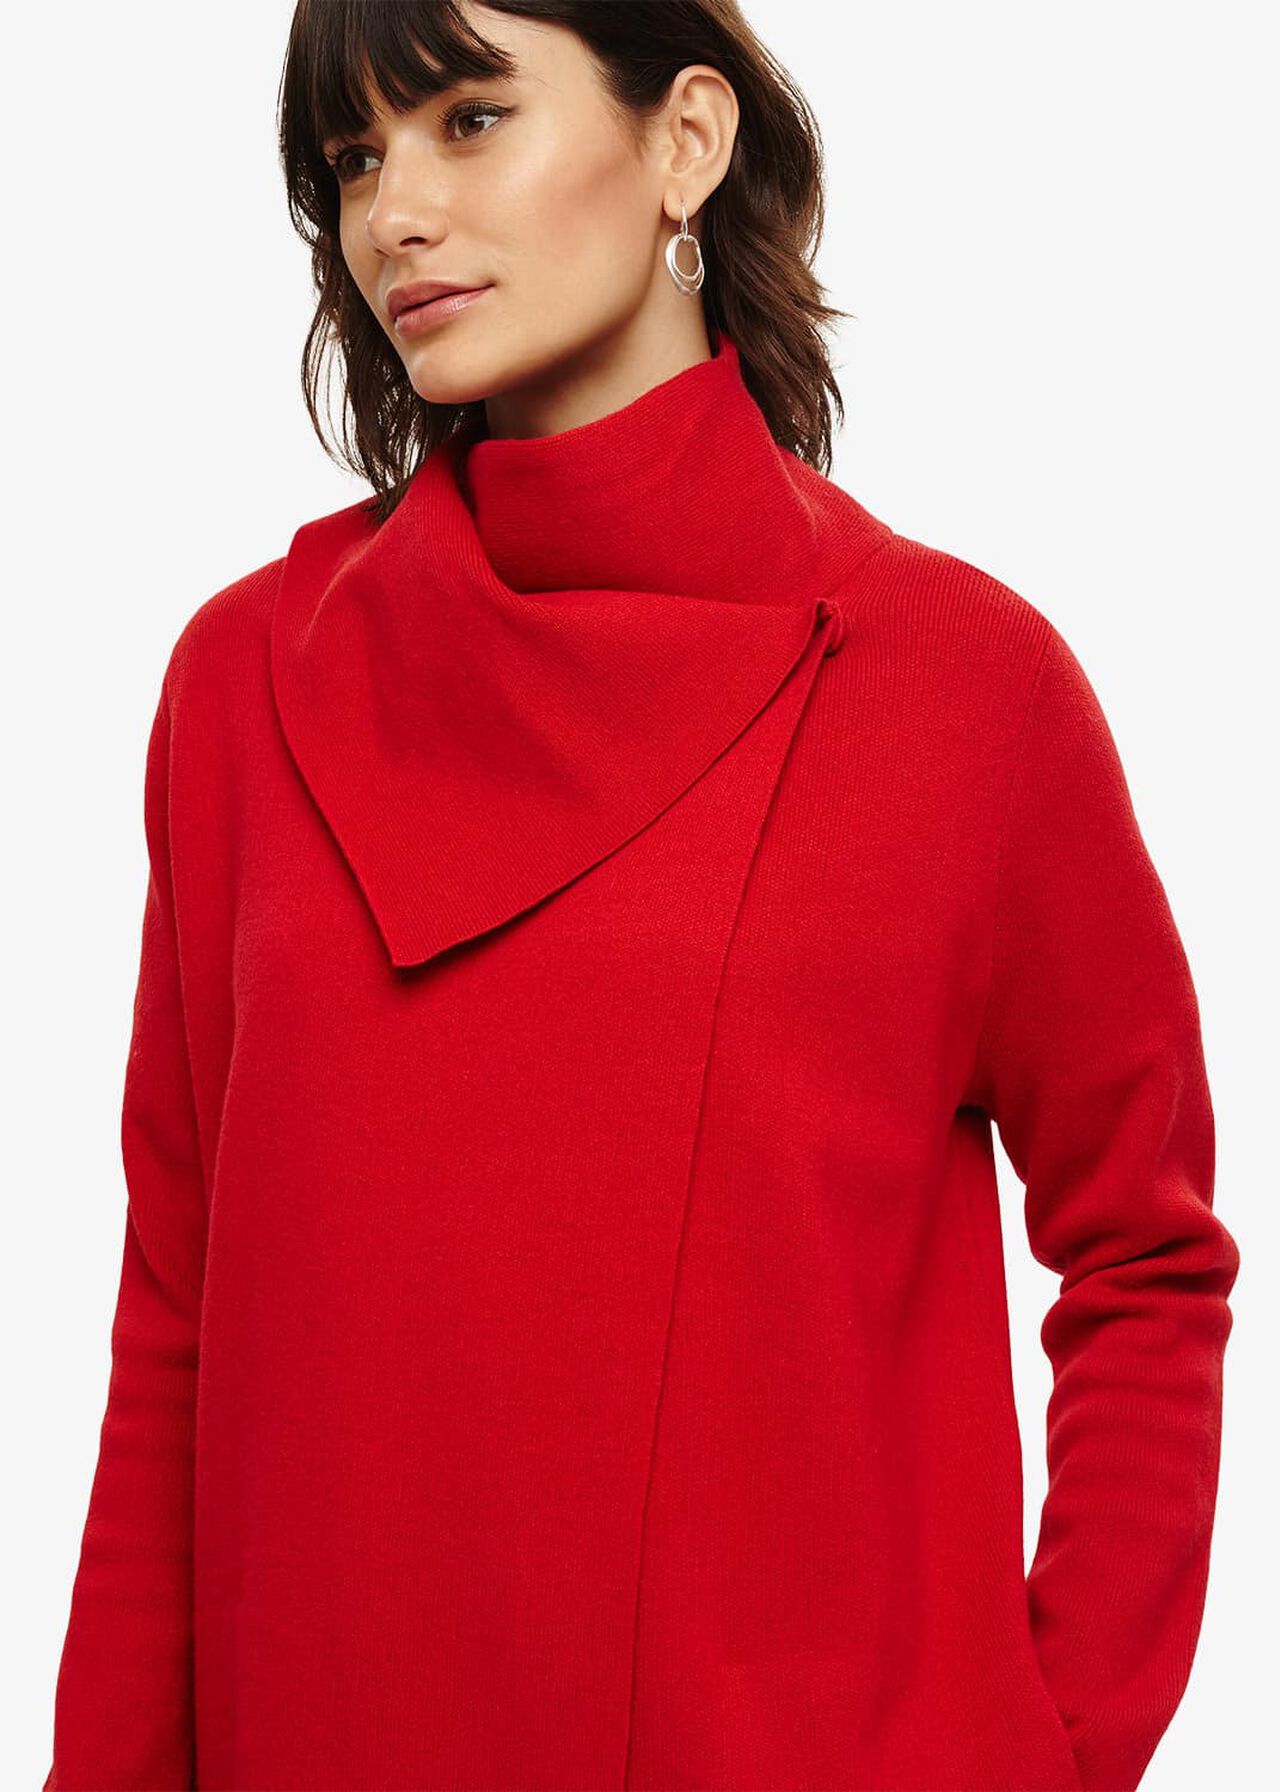 Paloma Knit Coat